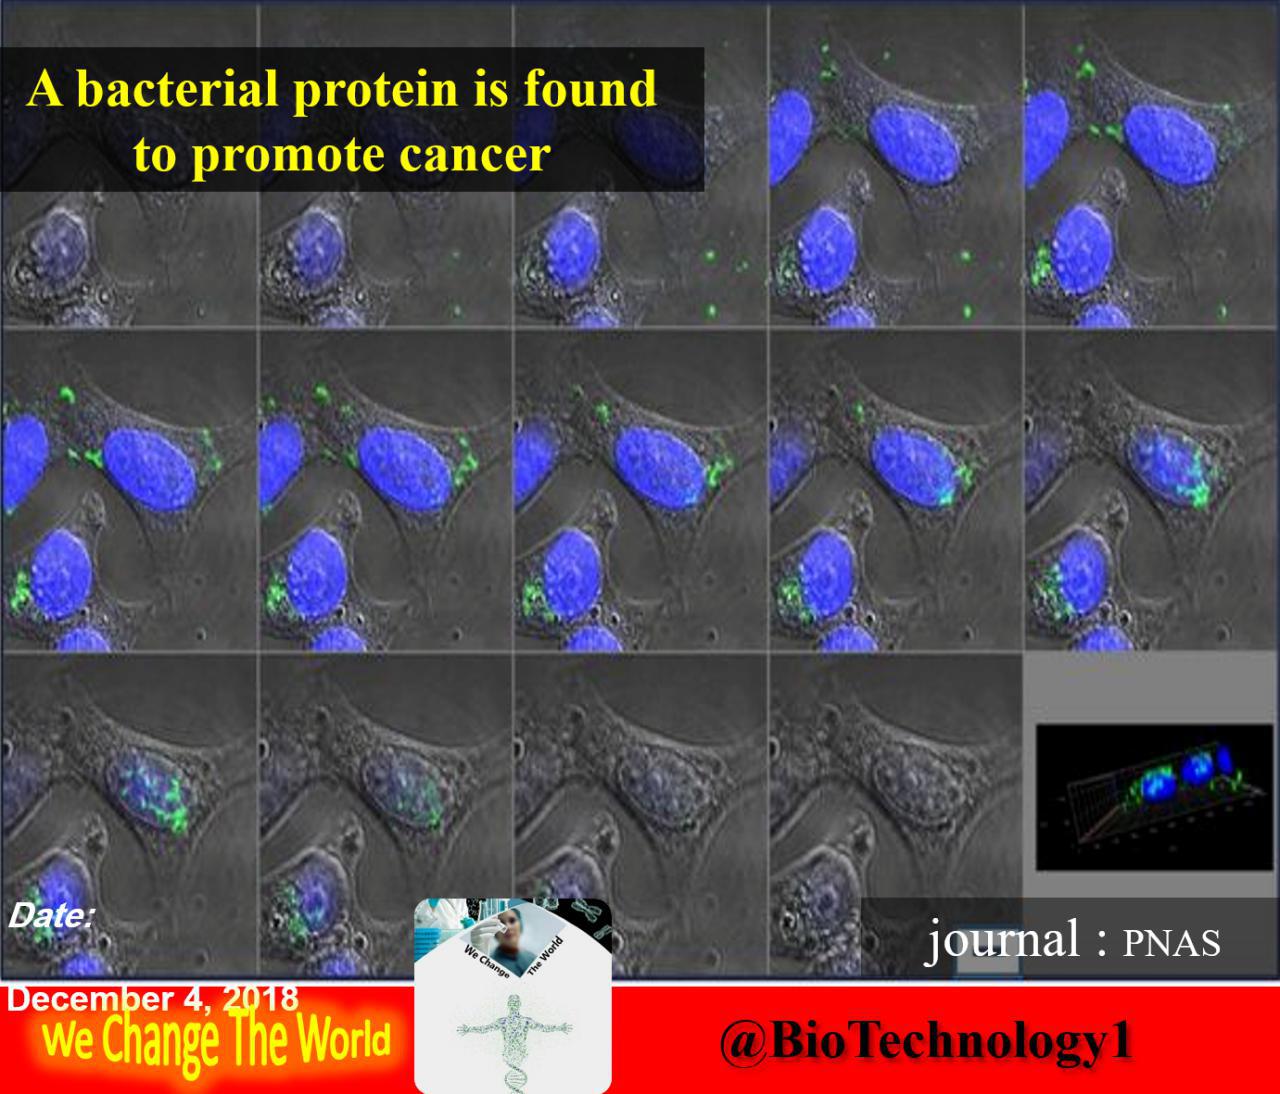 پروتئین باکتریایی که موجب پیشرفت سرطان می شود